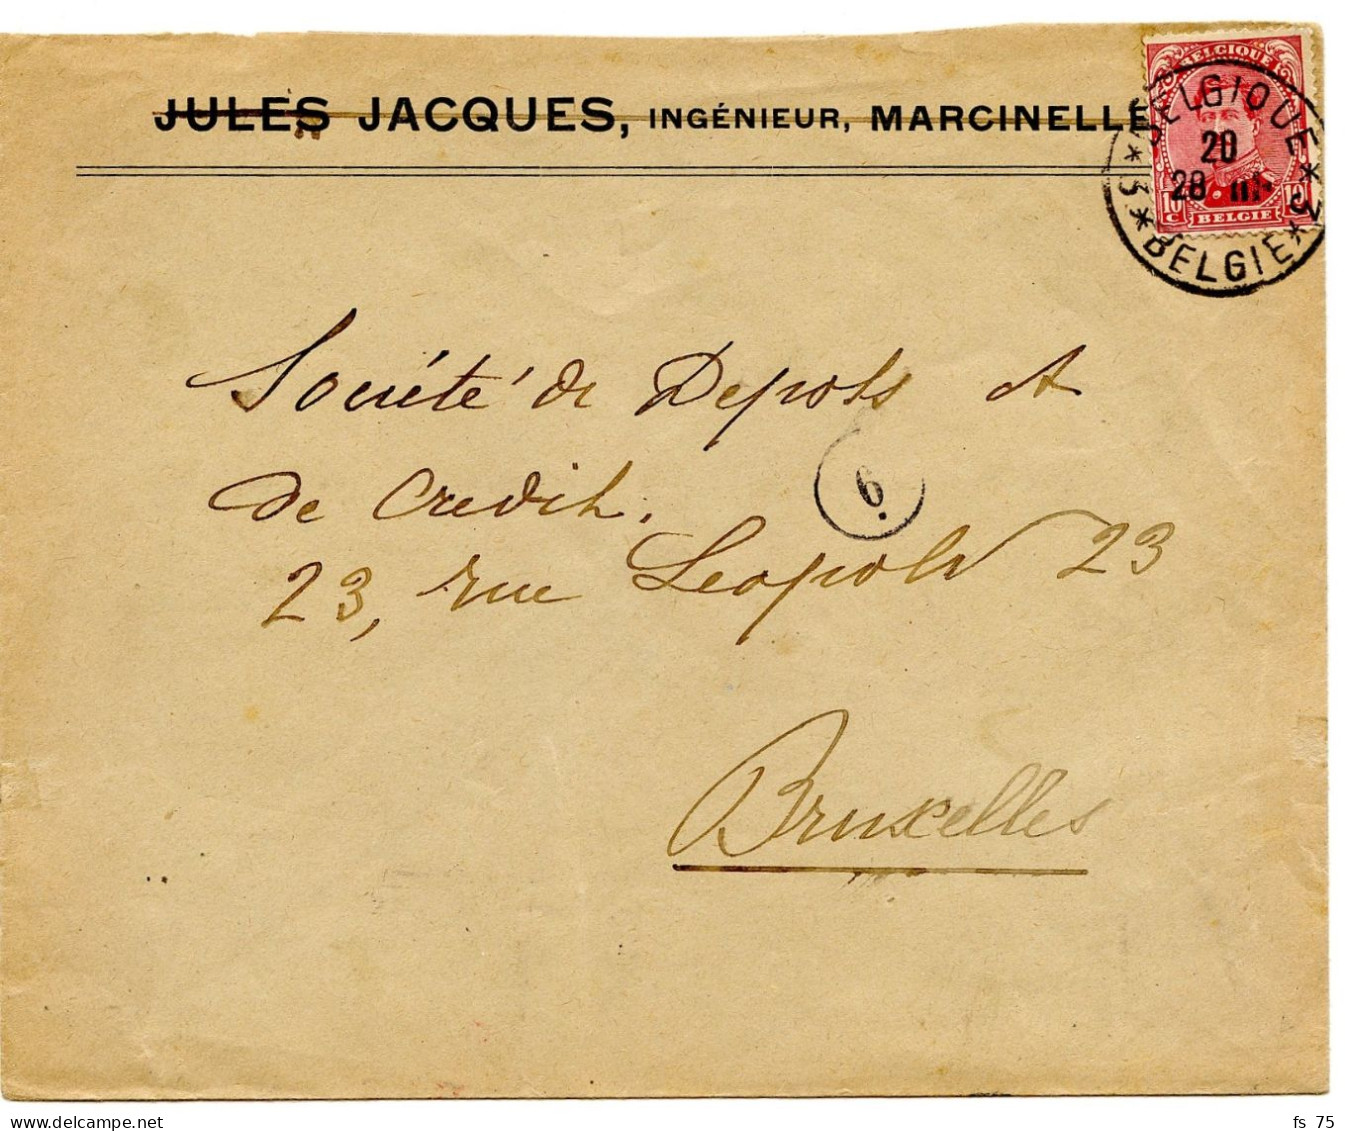 BELGIQUE - COB 138 SIMPLE CERCLE BILINGUE 3 * BELGIQUE * 3  SUR LETTRE DE MARCINELLE, 1919 - Cartas & Documentos